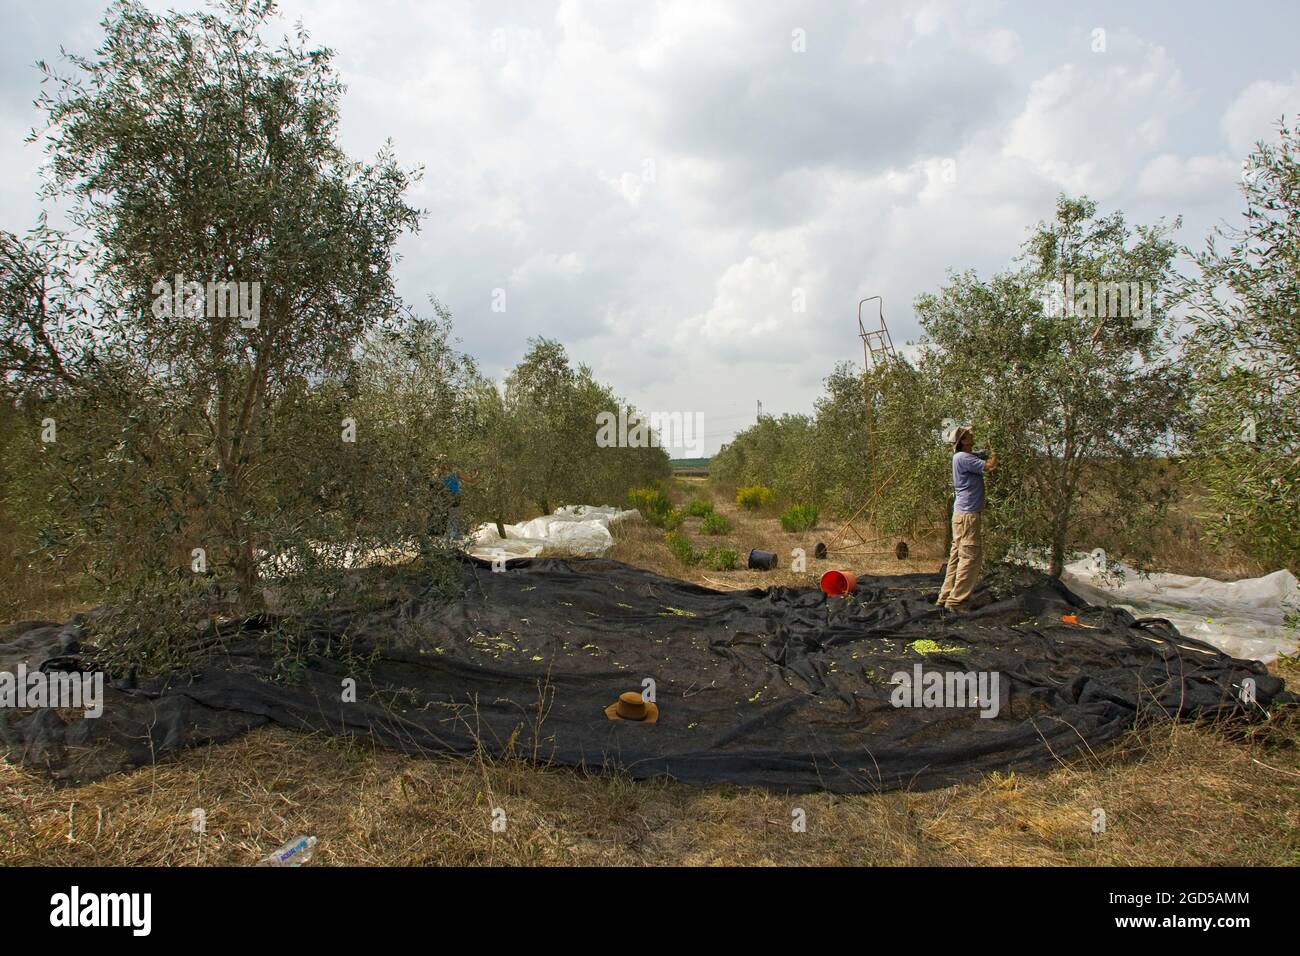 Cueillir des olives dans une oliveraie. Photographié en Israël. La méthode habituelle est de placer un tissu sous l'arbre et de frapper ensuite les branches. L'oliv mûr Banque D'Images